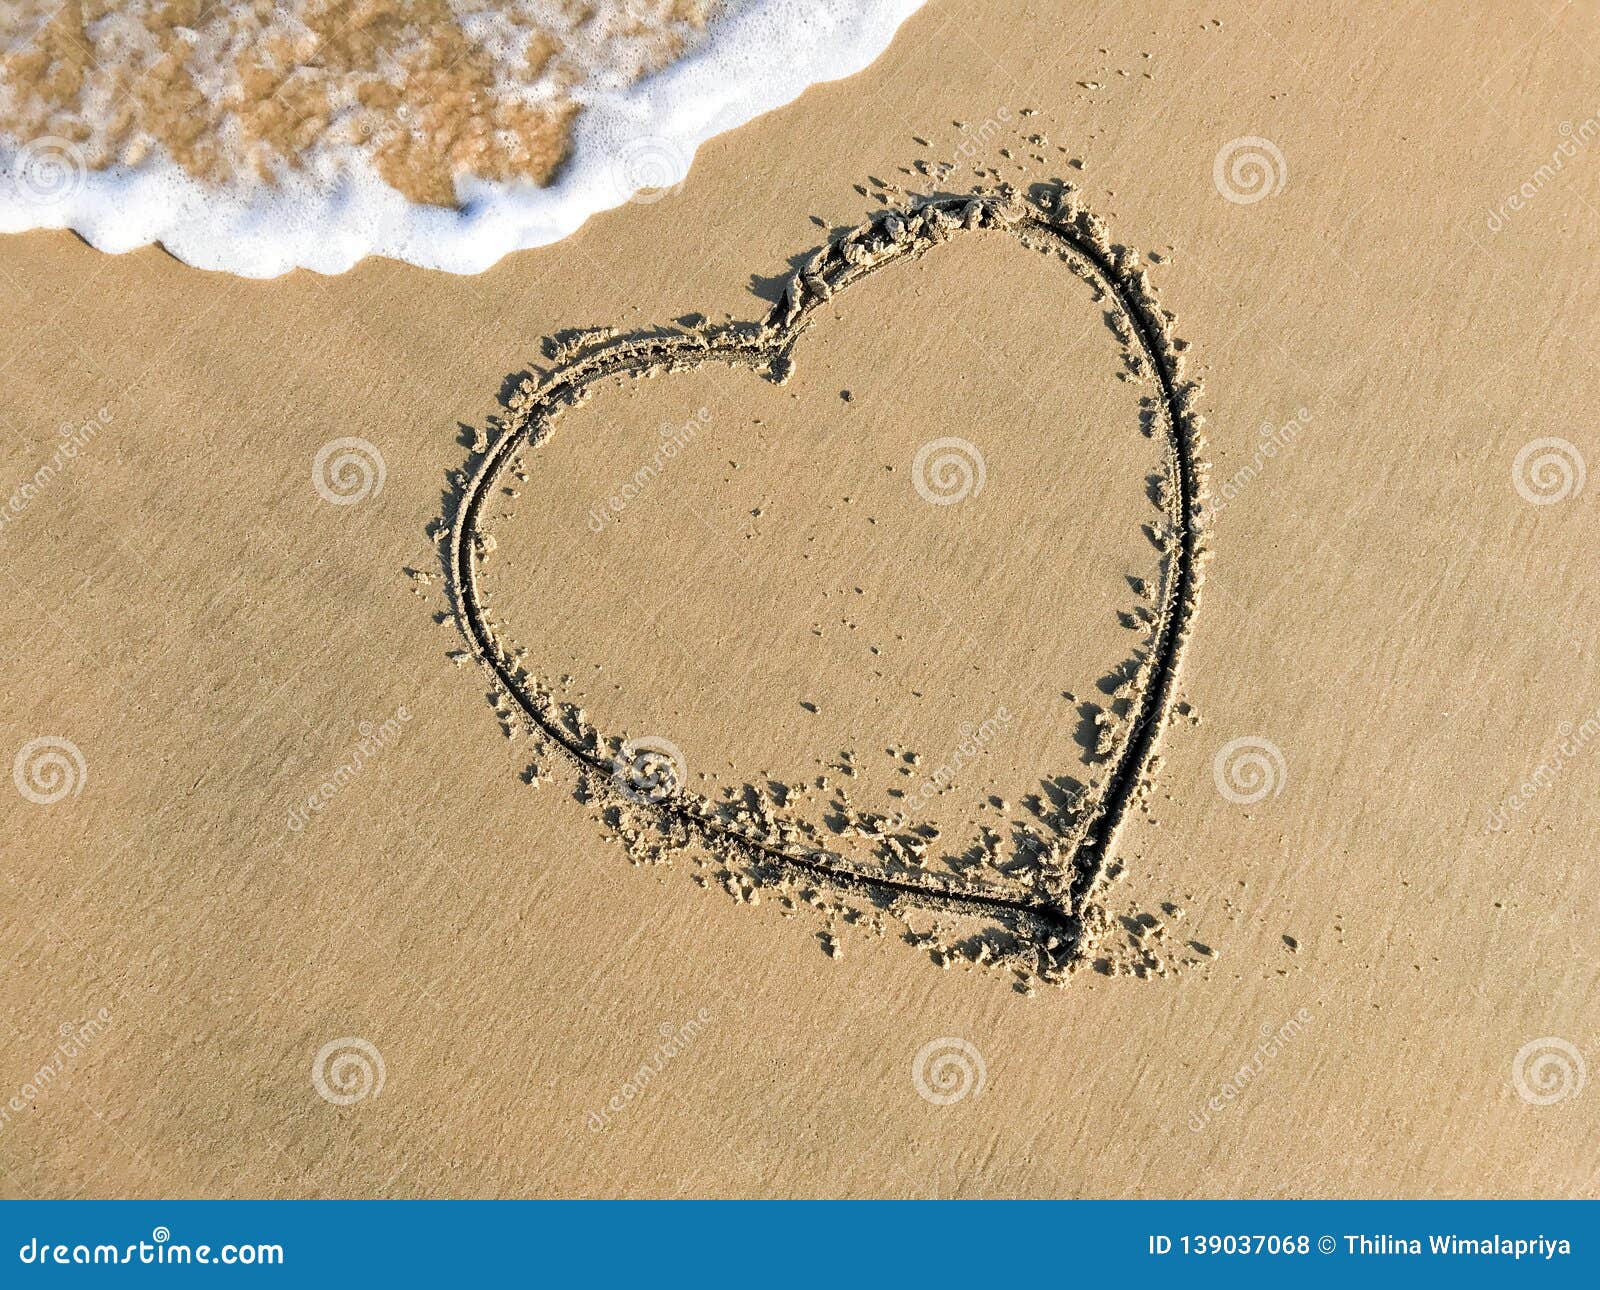 dessin d'une forme de coeur sur le sable et vague avec de la